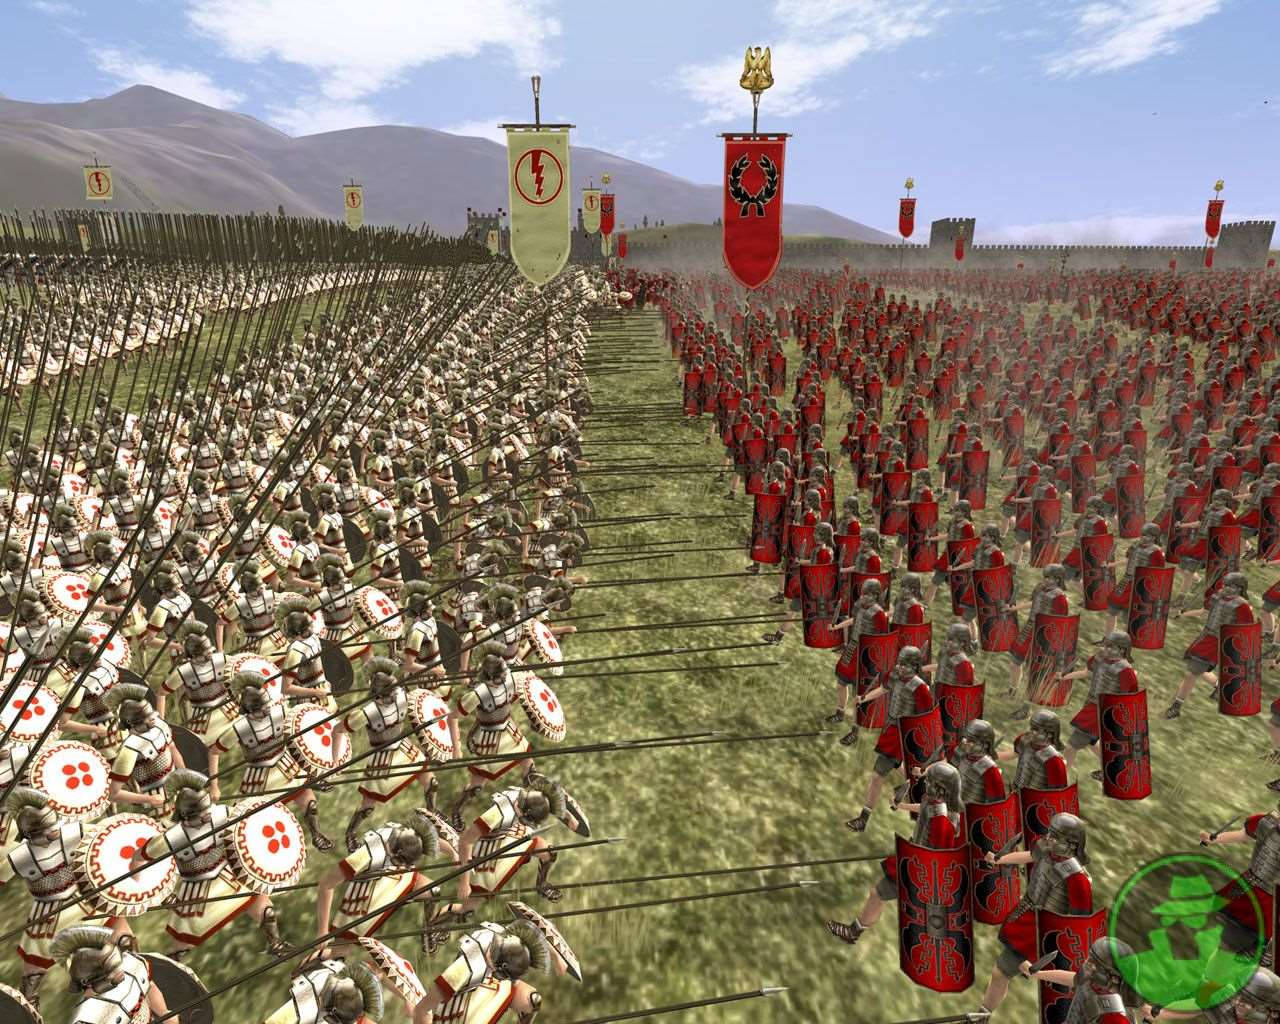 Unacaptura De Pantalla De Una Batalla Entre Romanos Y Griegos. Fondo de pantalla